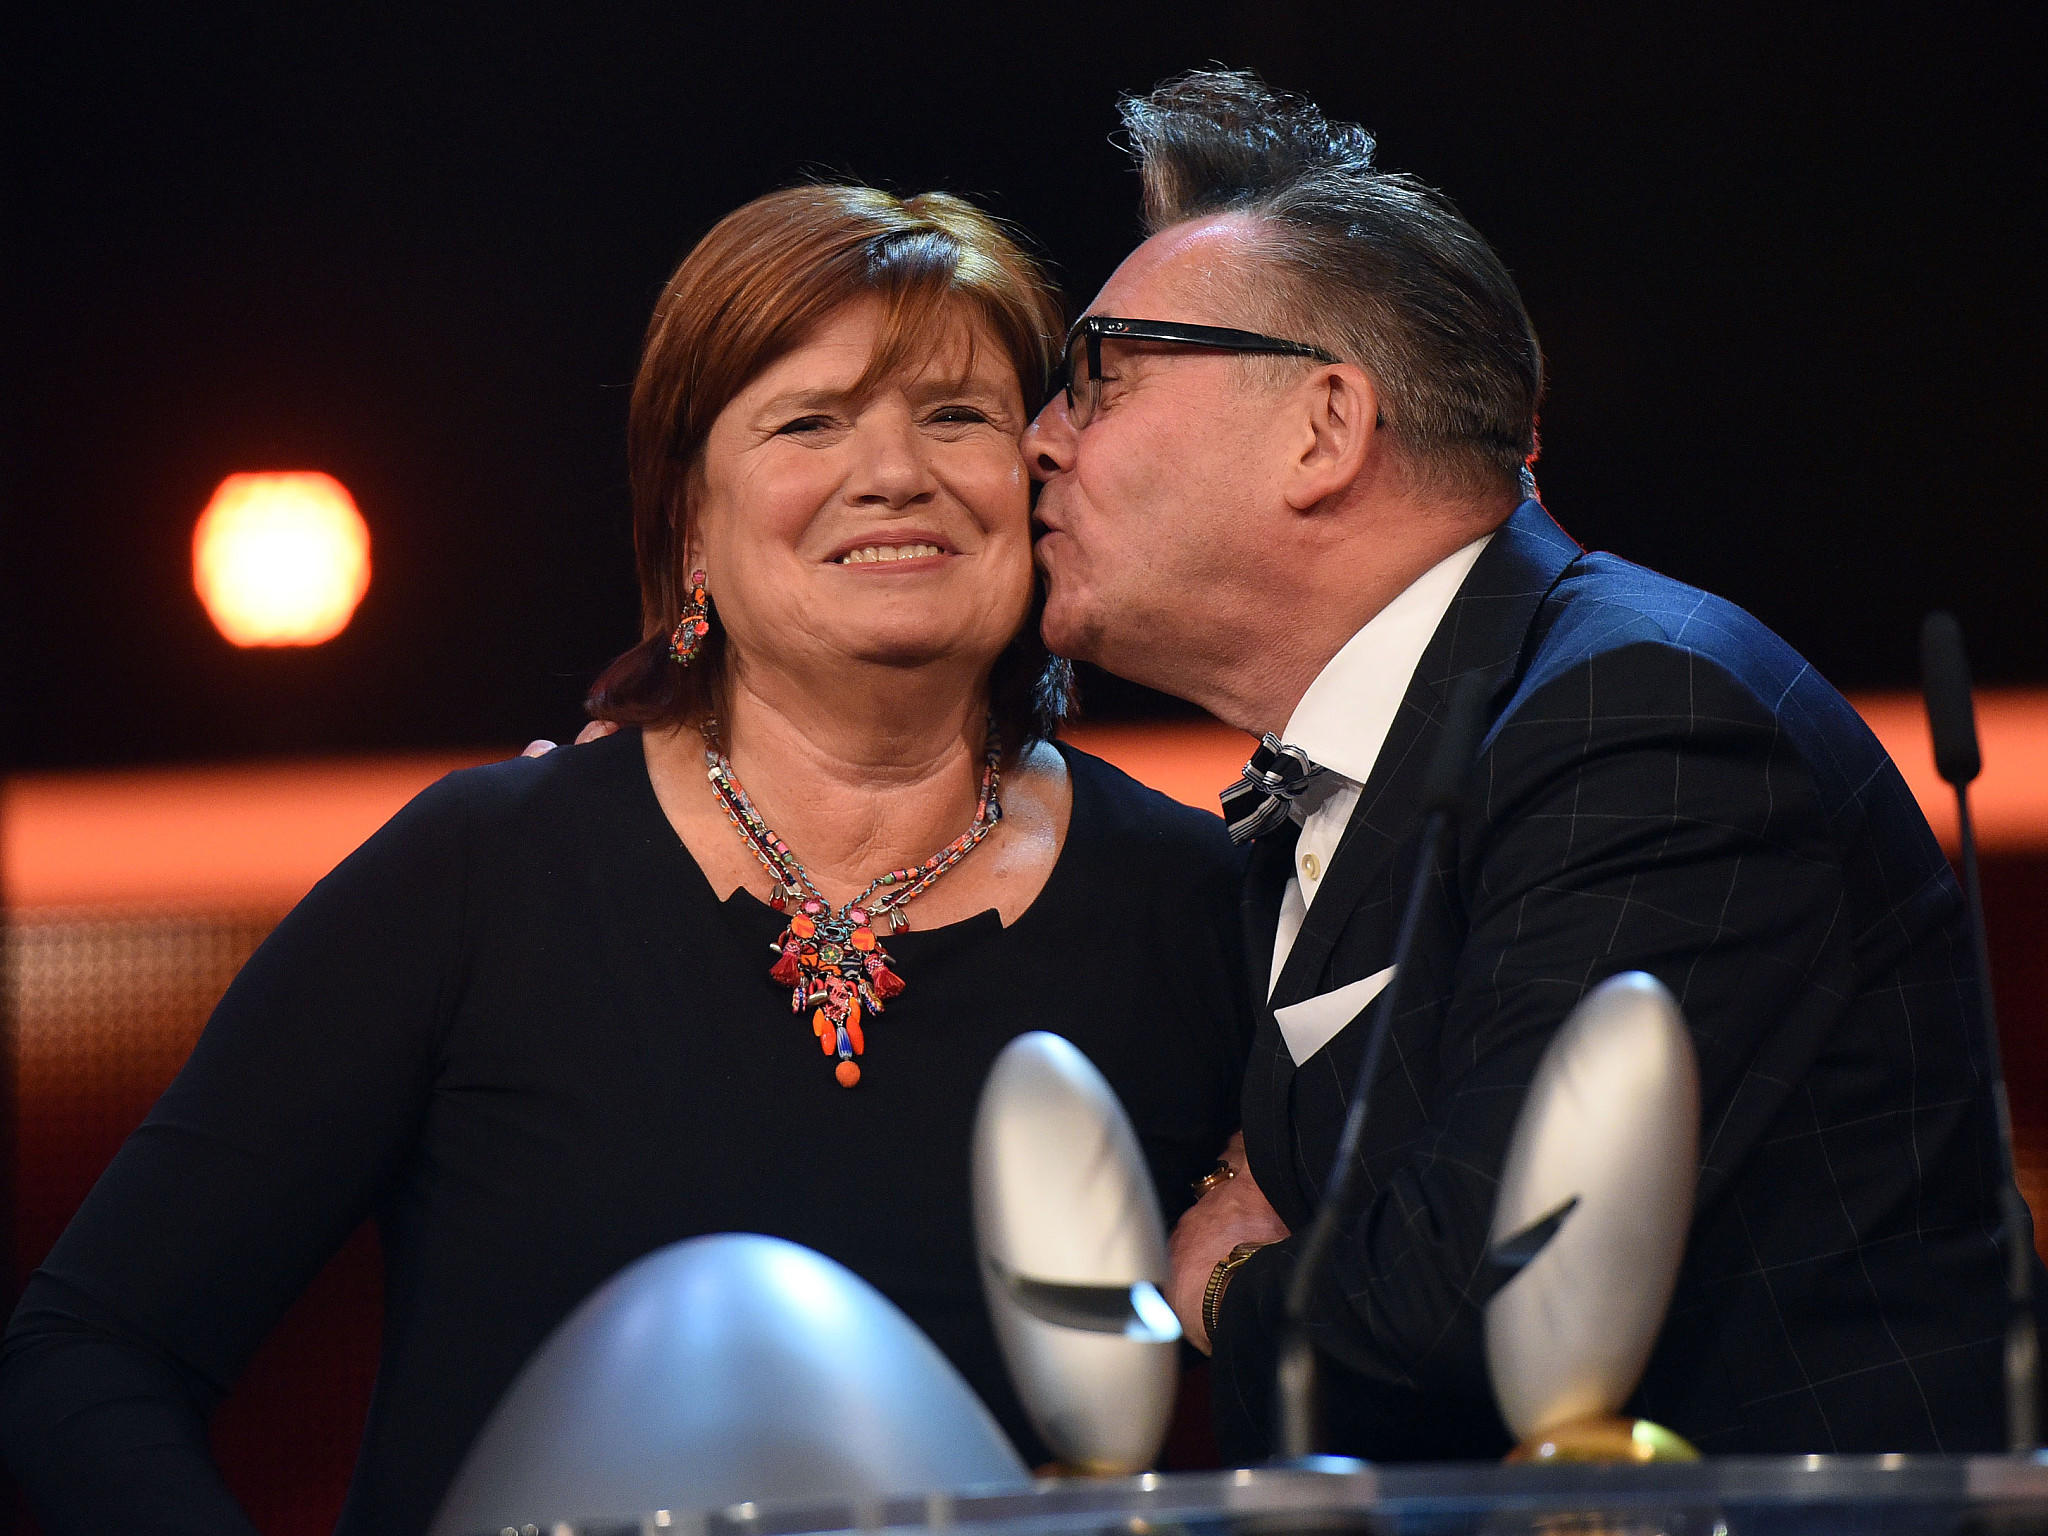 Christine Westermann und Götz Alsmann bei der Verleihung des Deutschen Comedy-Preises 2016